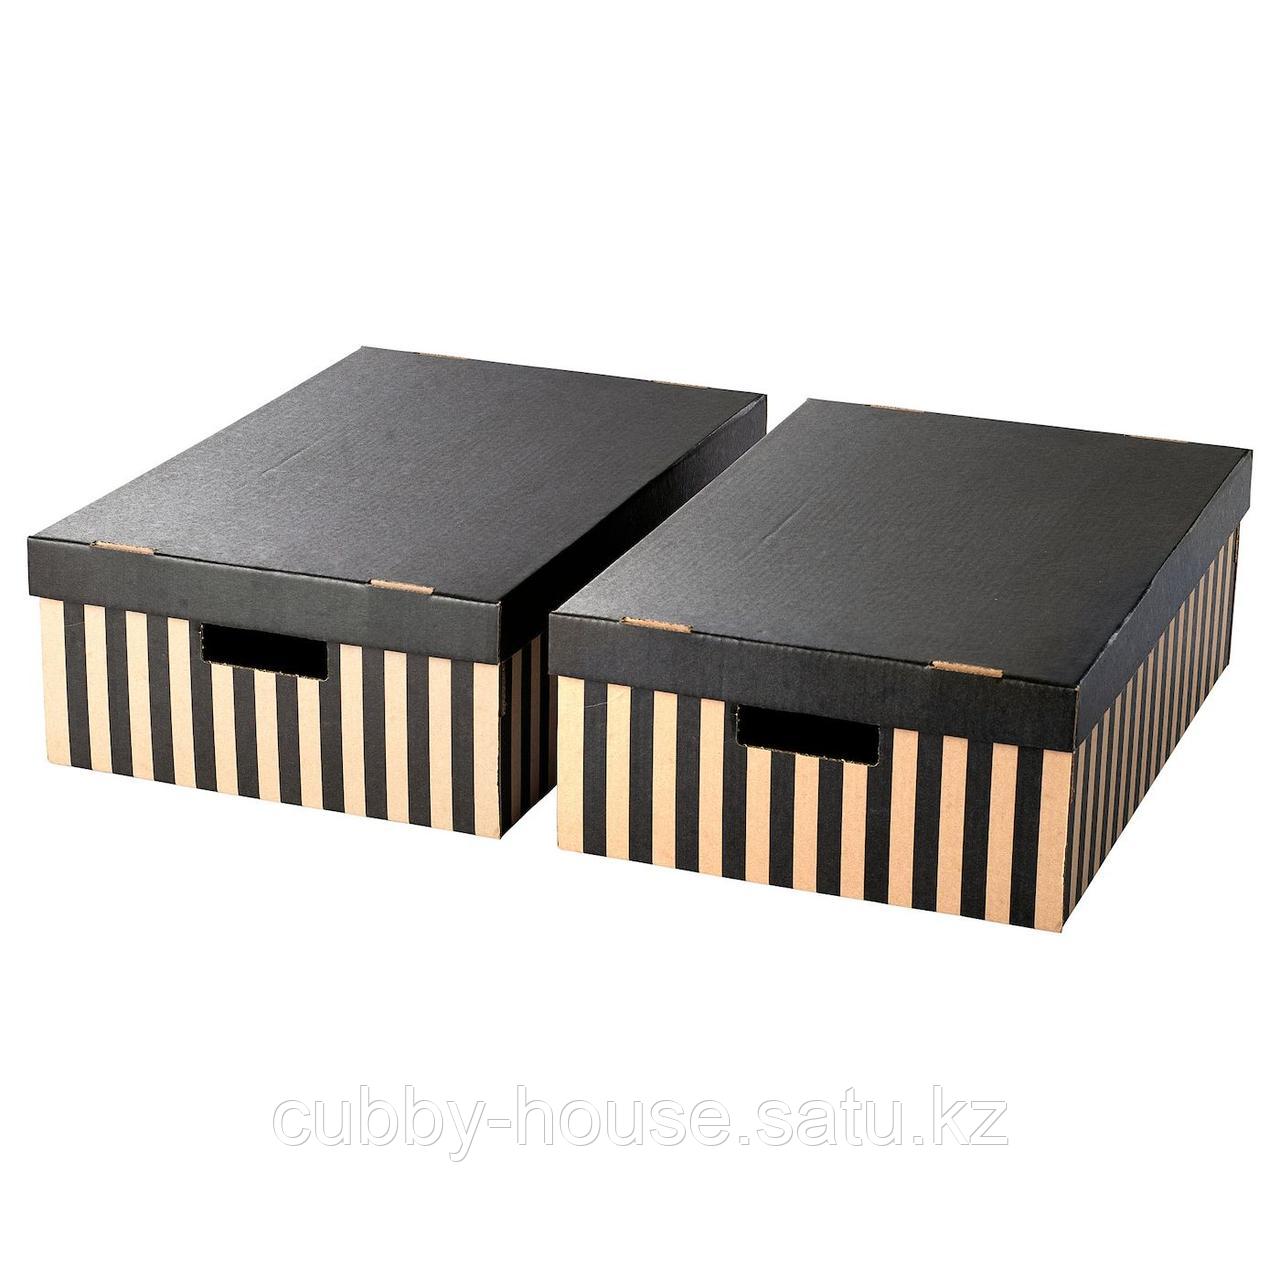 ПИНГЛА Коробка с крышкой, черный, естественный, 56x37x18 см